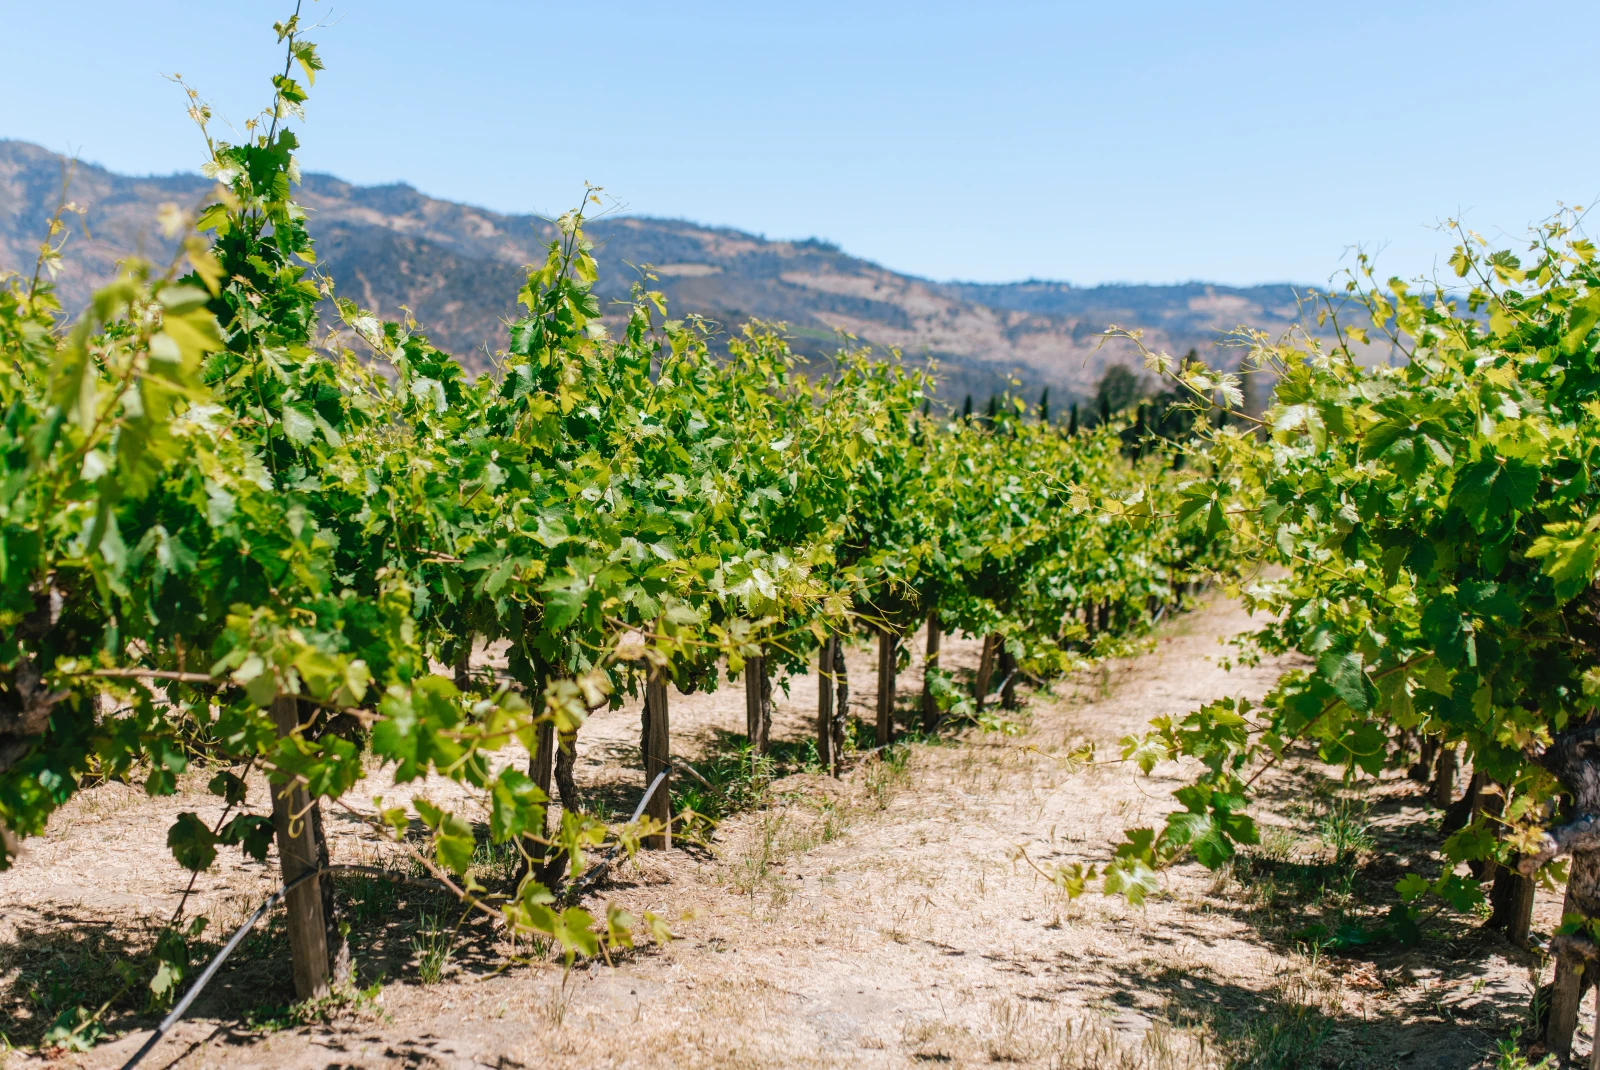 Vineyard in California. 